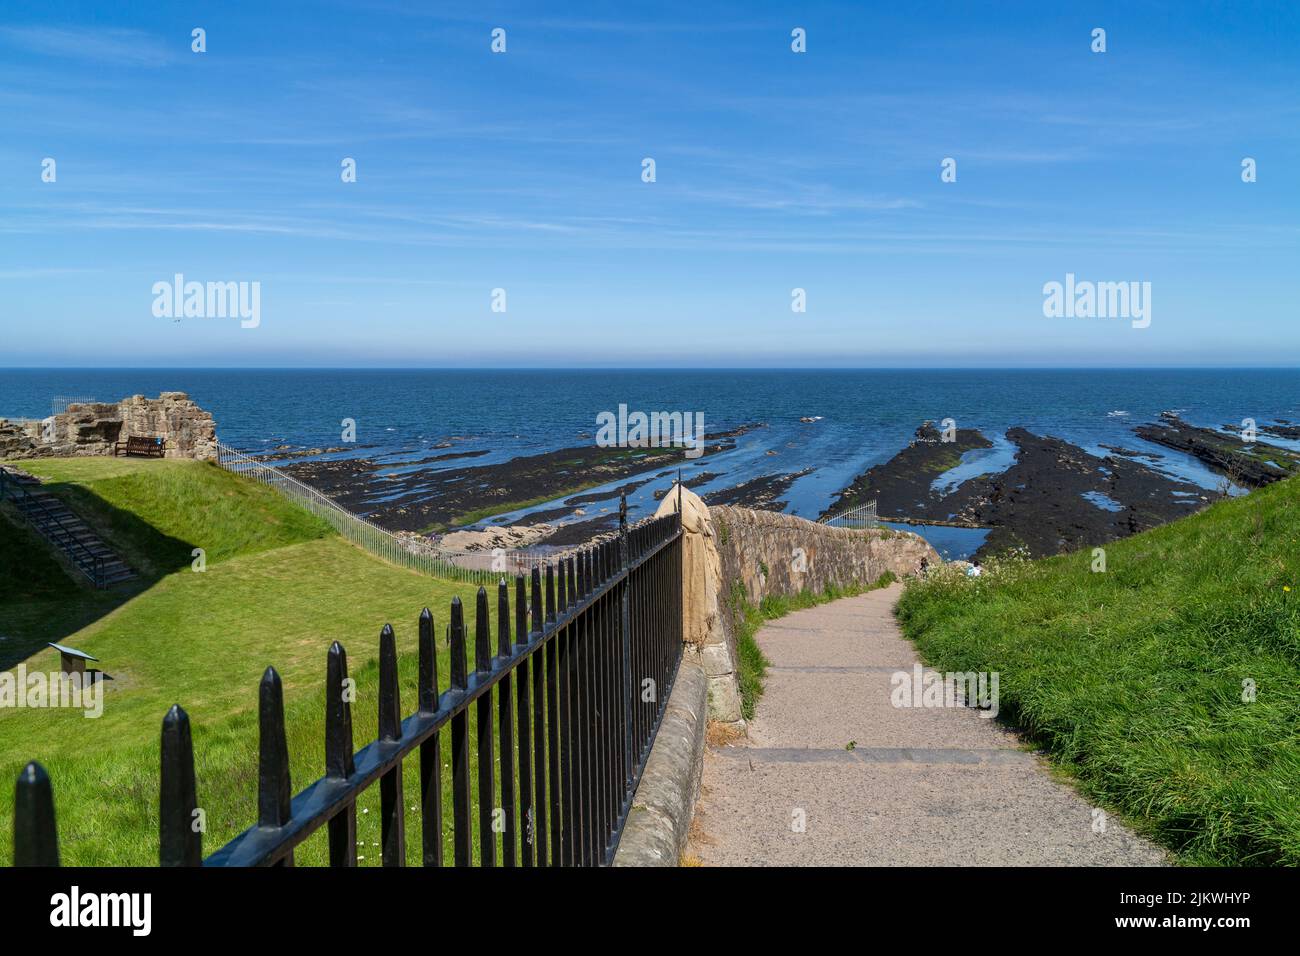 Die schöne Aussicht auf die grüne Wiese und das Meer gegen den blauen Himmel. St Andrews, Schottland, Großbritannien. Stockfoto